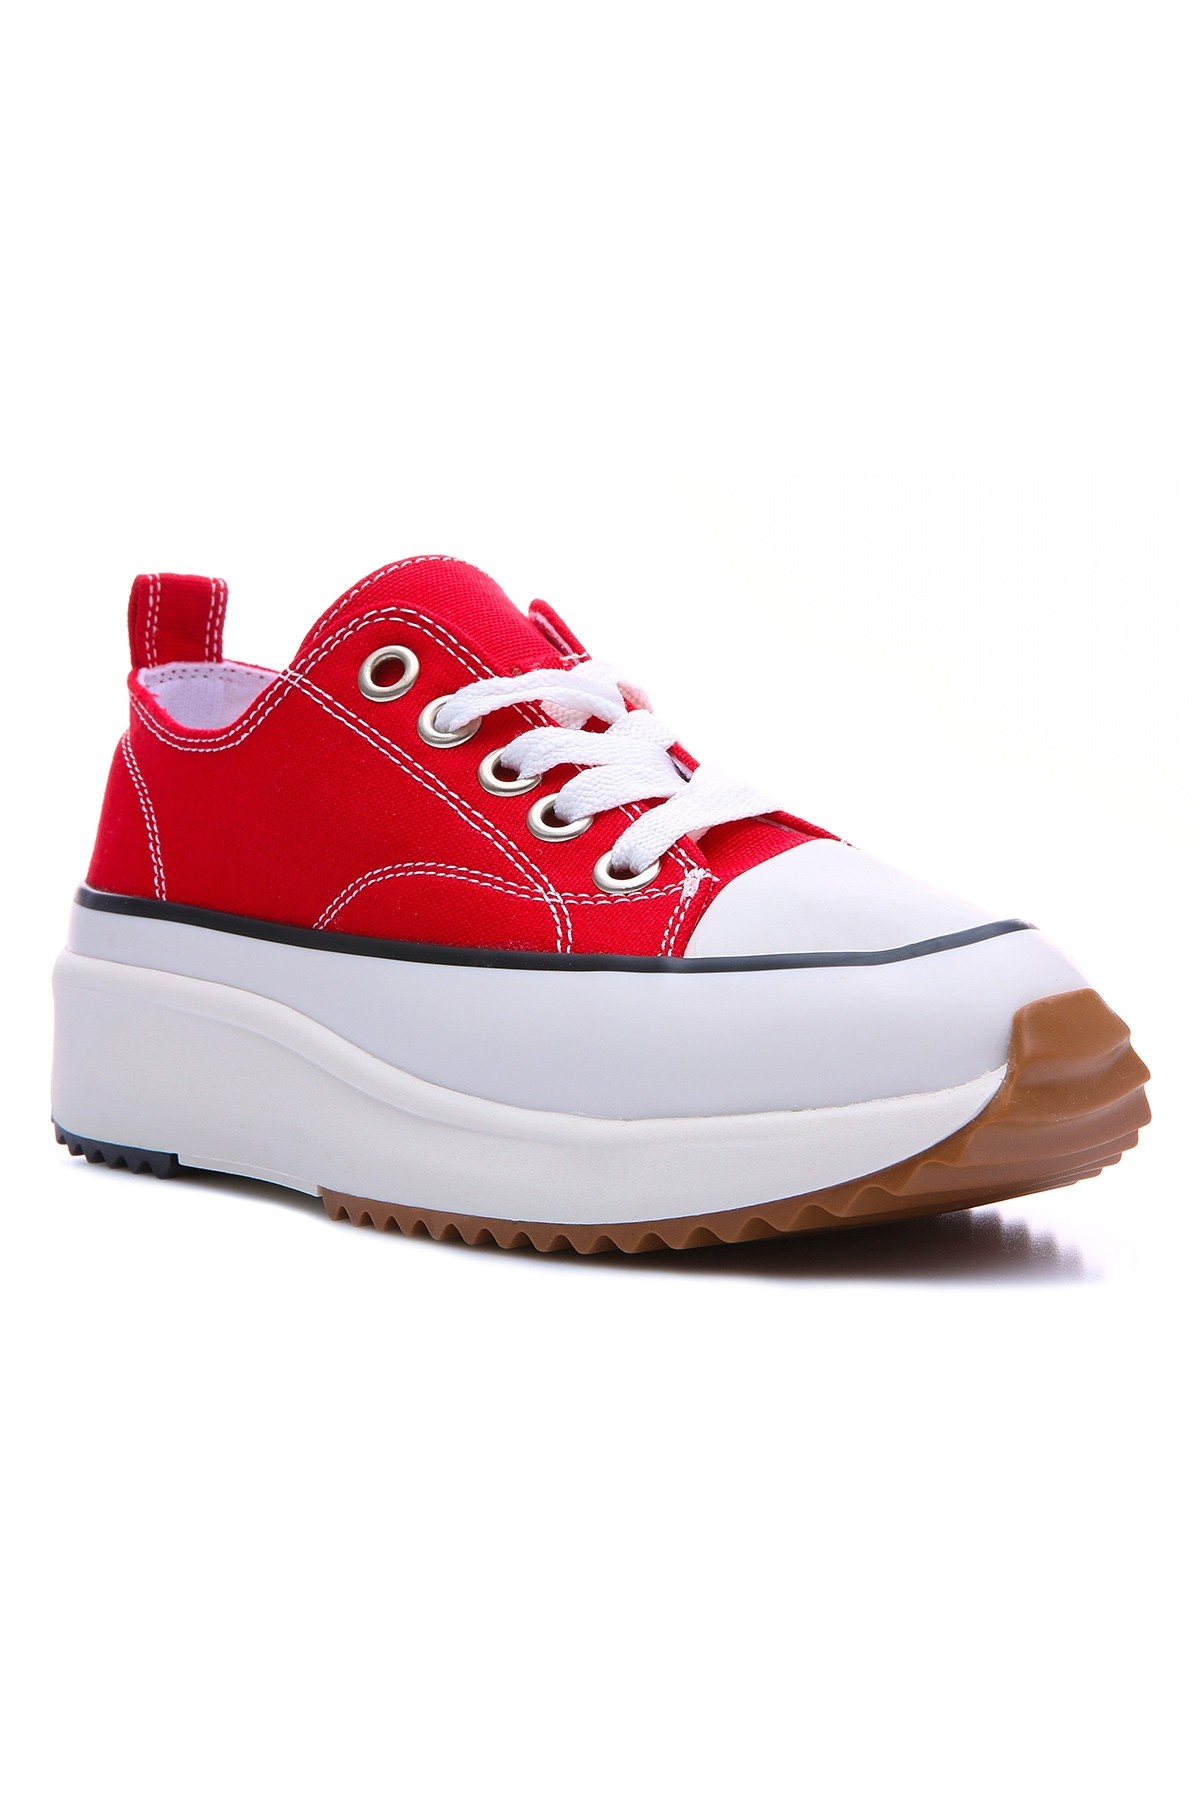 Kırmızı Bağcıklı Yüksek Taban Günlük Kadın Spor Ayakkabı - 89070